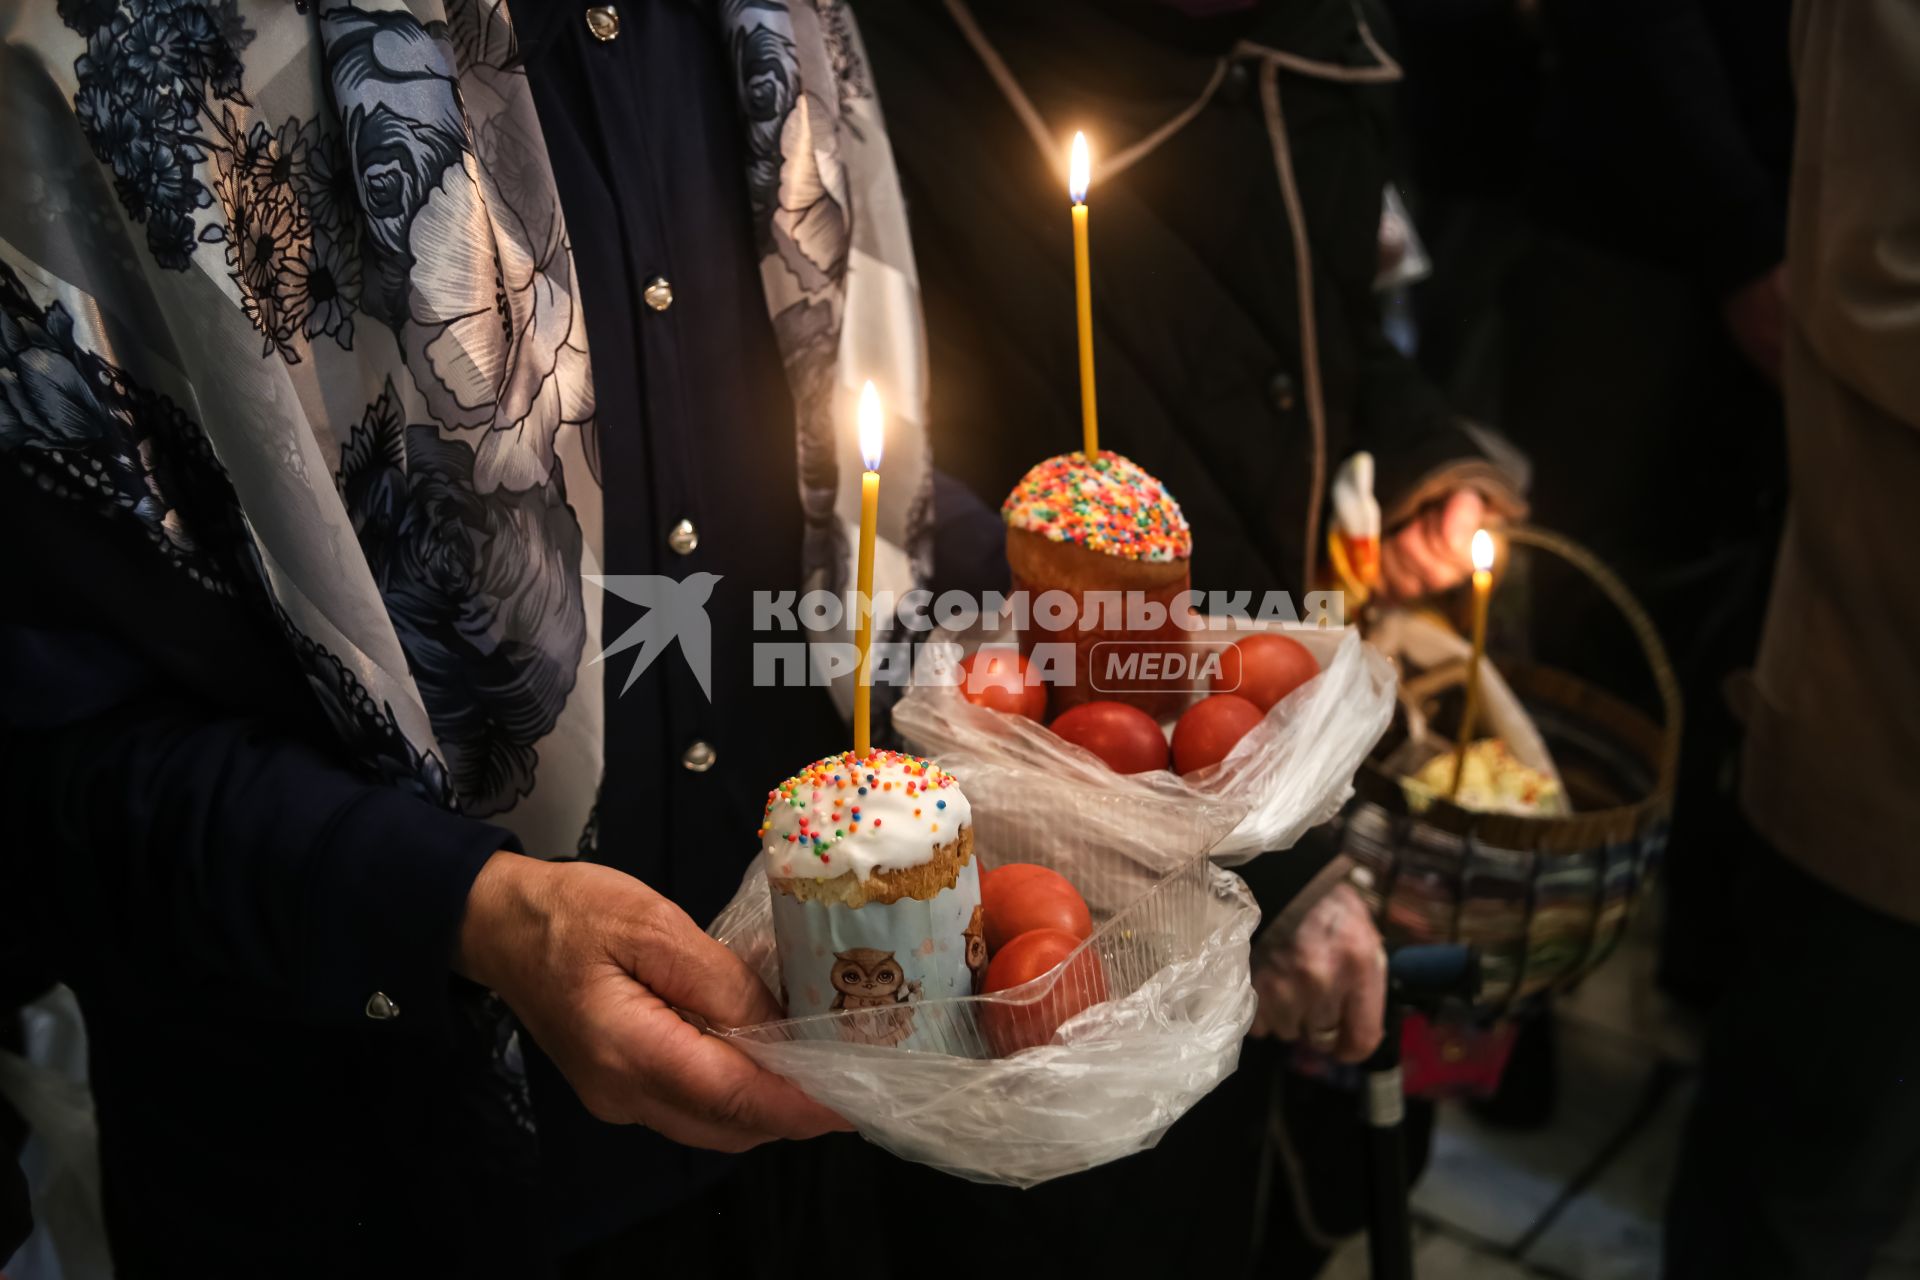 Красноярск. Прихожане во время освящения пасхальных куличей и яиц в Покровском кафедральном соборе.